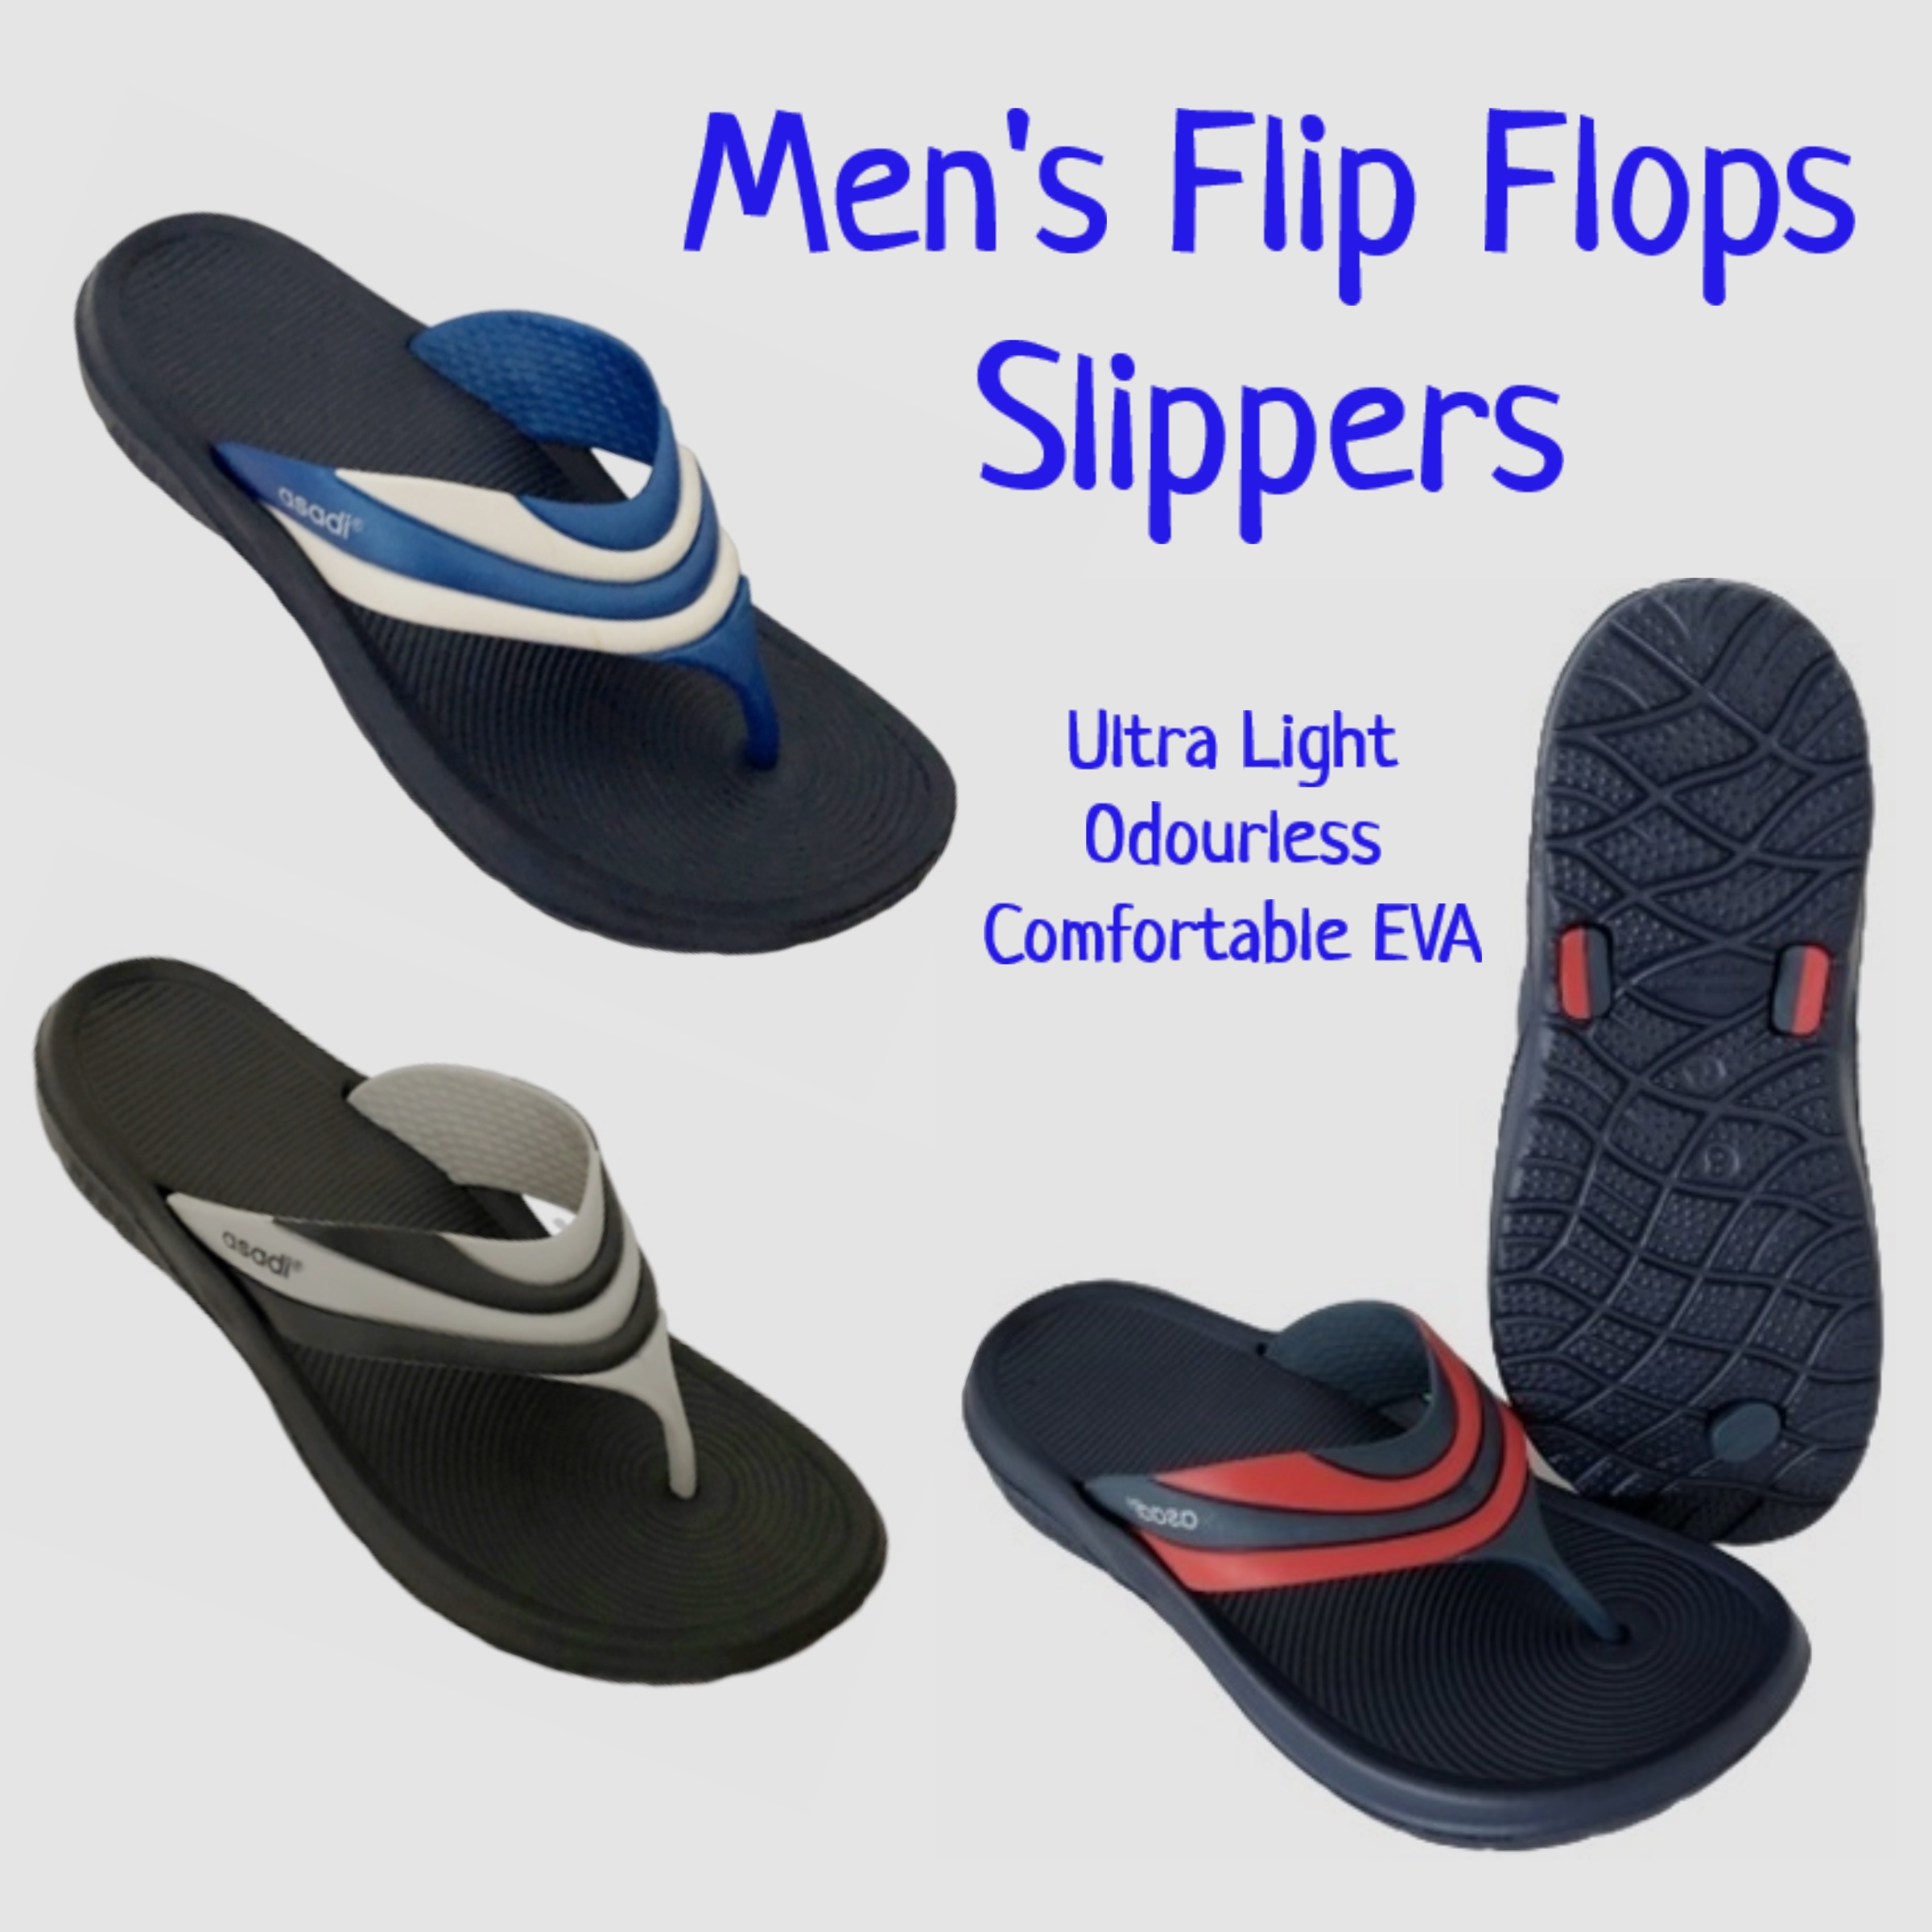 SG SELLER] Flip Flops Slippers Men's 